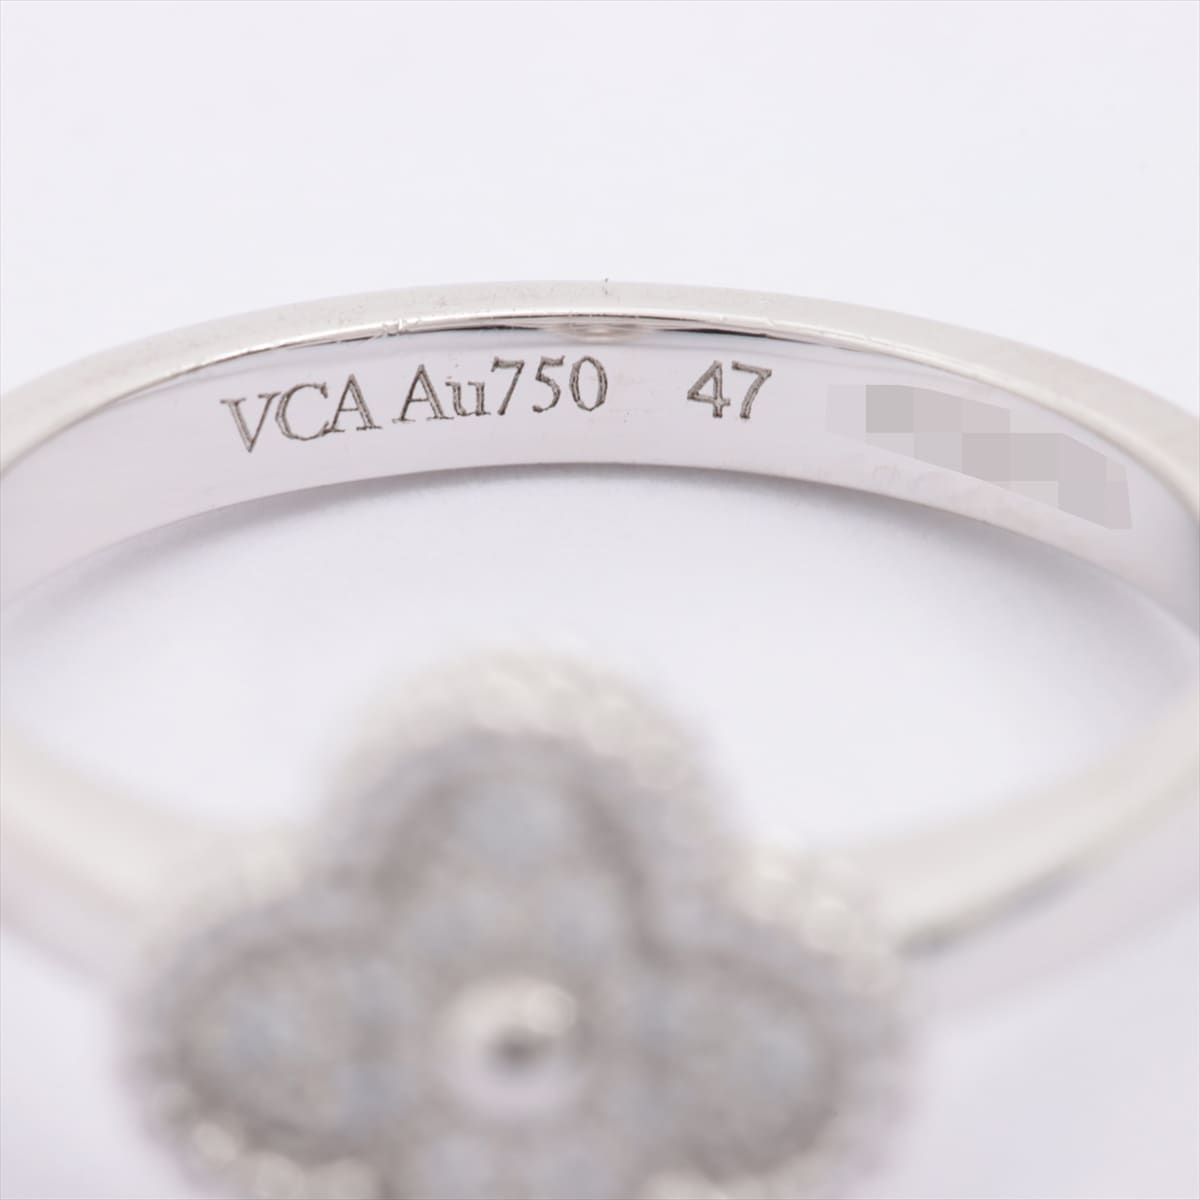 Van Cleef & Arpels Sweet Alhambra diamond rings 750(WG) 3.1g 47